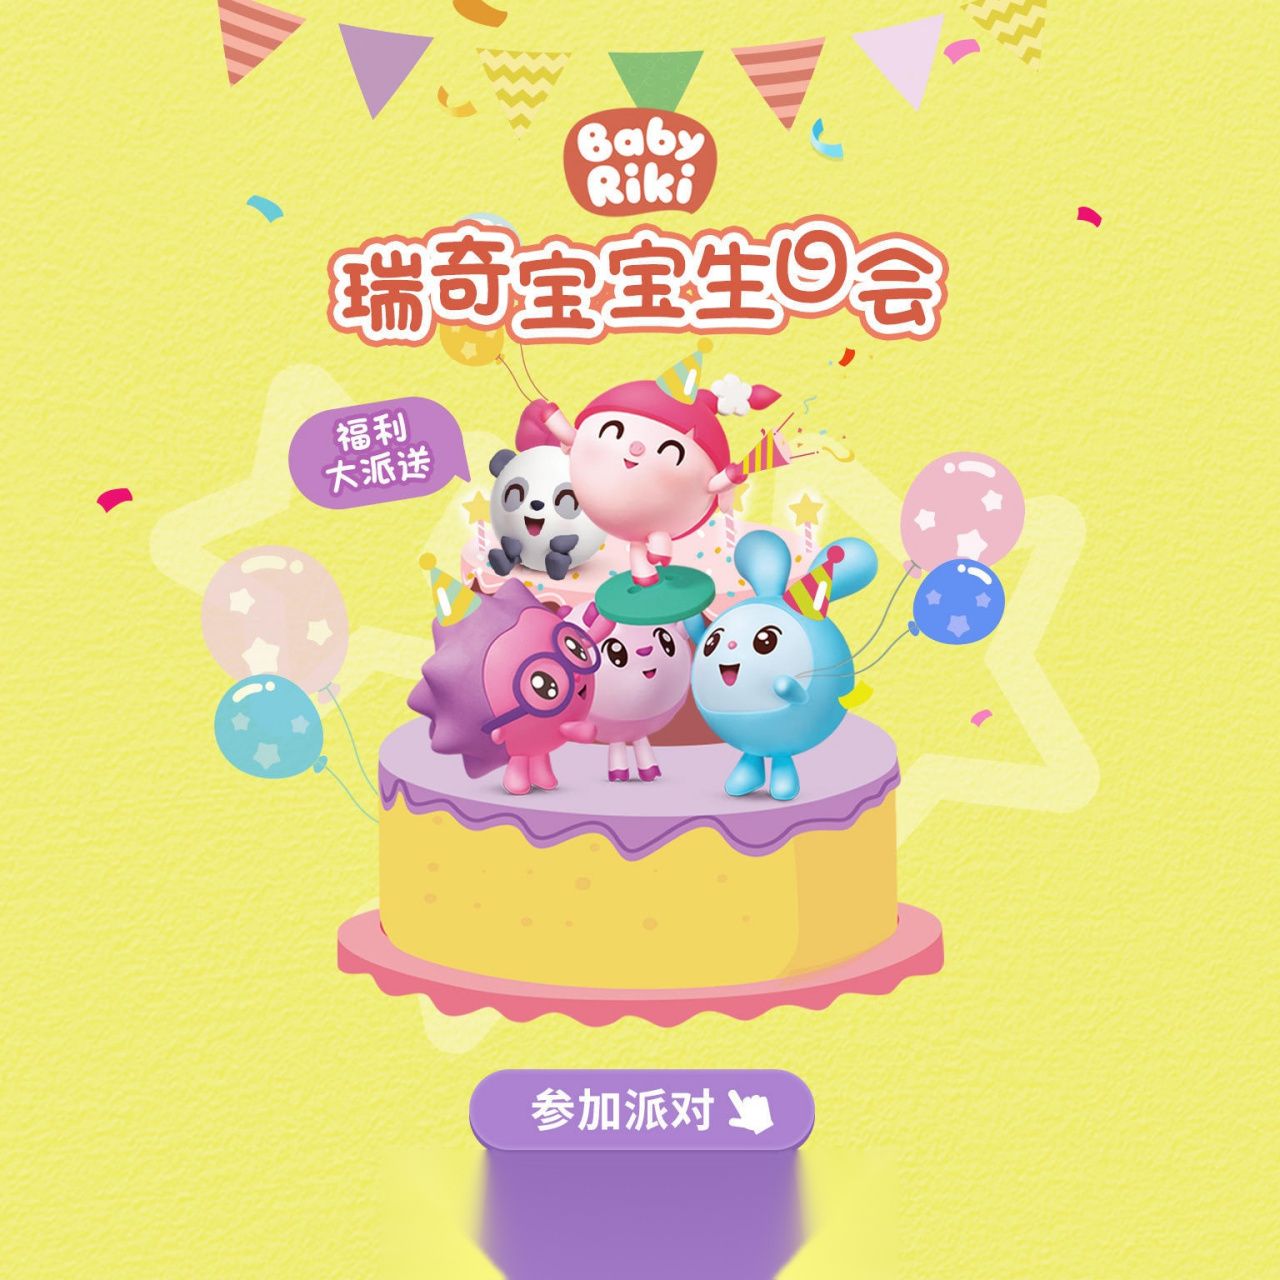 瑞奇宝宝要过生日啦[生日蛋糕][生日蛋糕][生日蛋糕] 这是瑞奇宝宝在